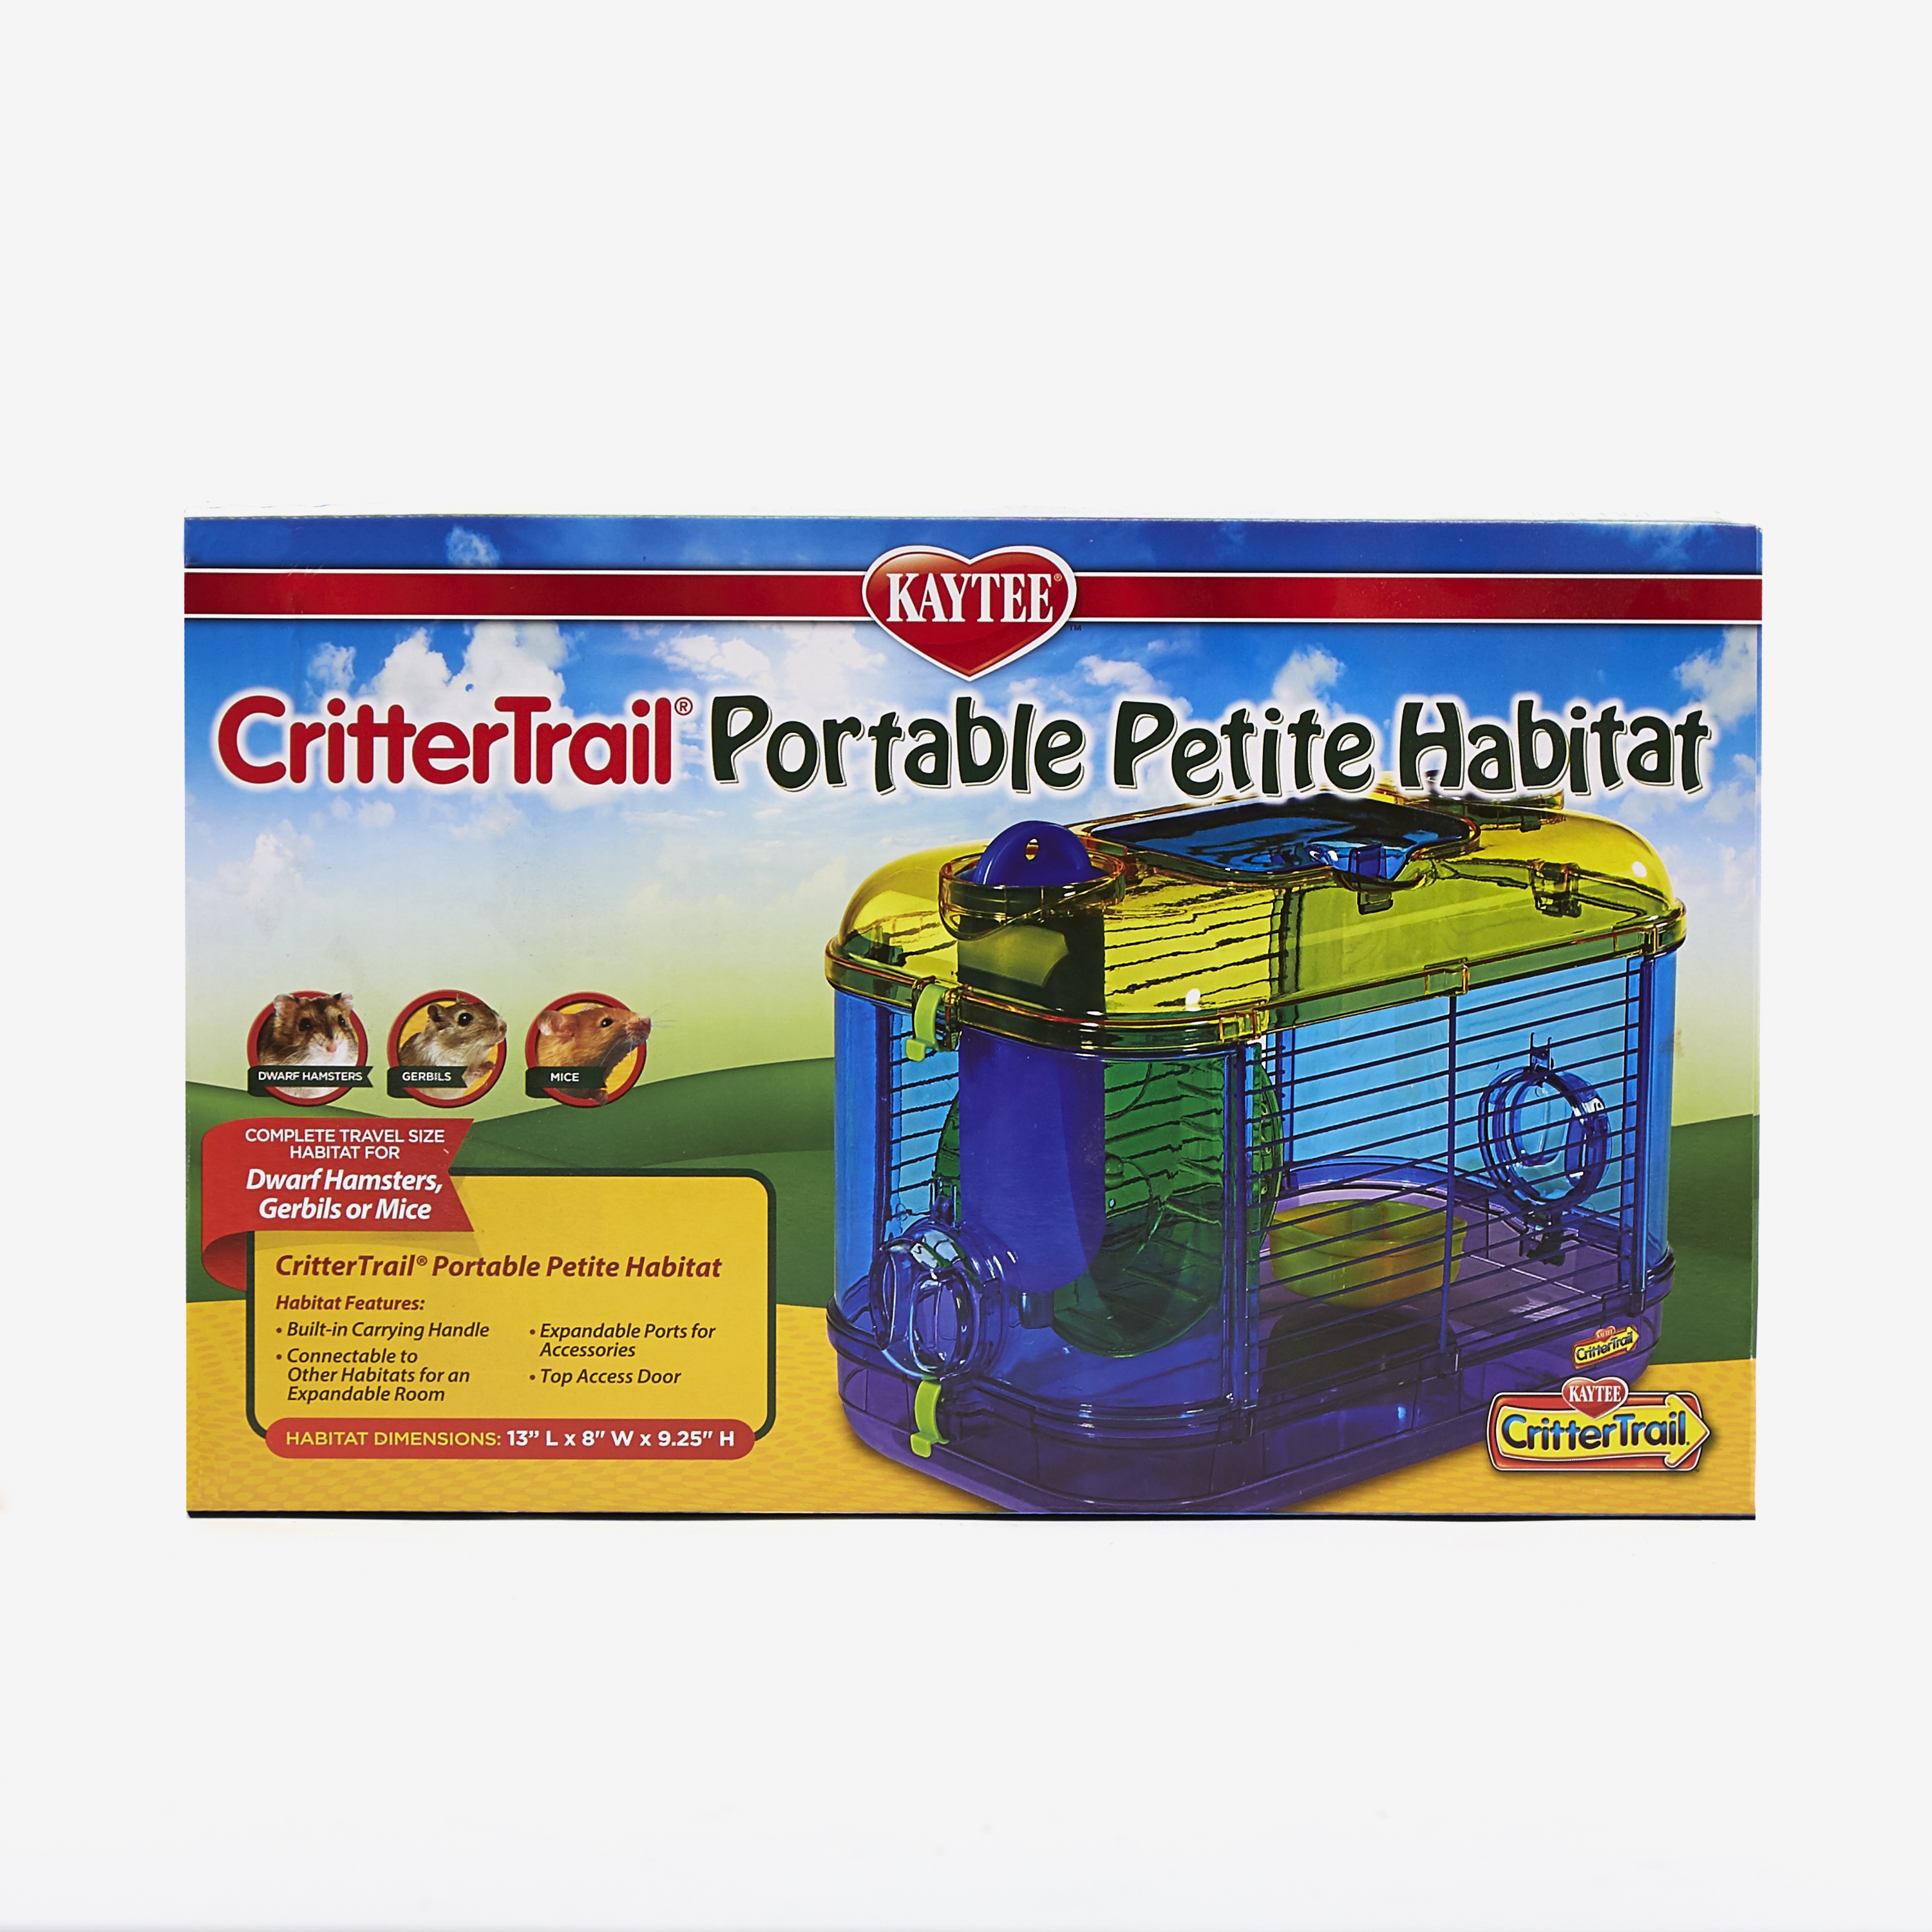 Crittertrail Portable Petite Habitat